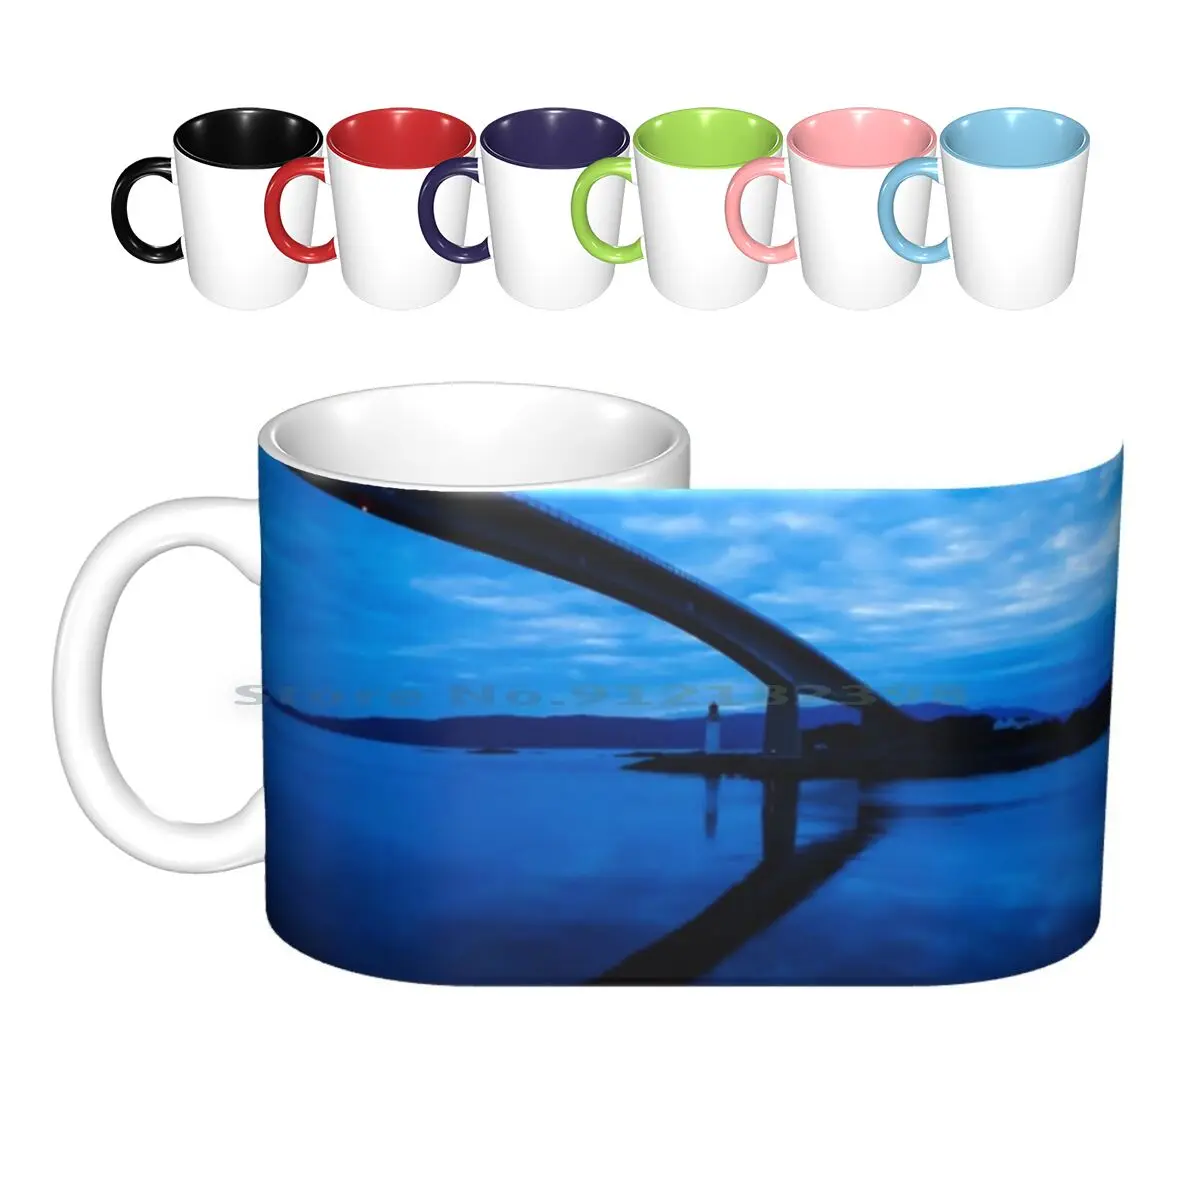 

Керамические кружки Skye Bridge, кофейные чашки, кружка для молока и чая, мост, маяк, океан, море, небо, облака, голубая ночь, сумерки, остров и Скай